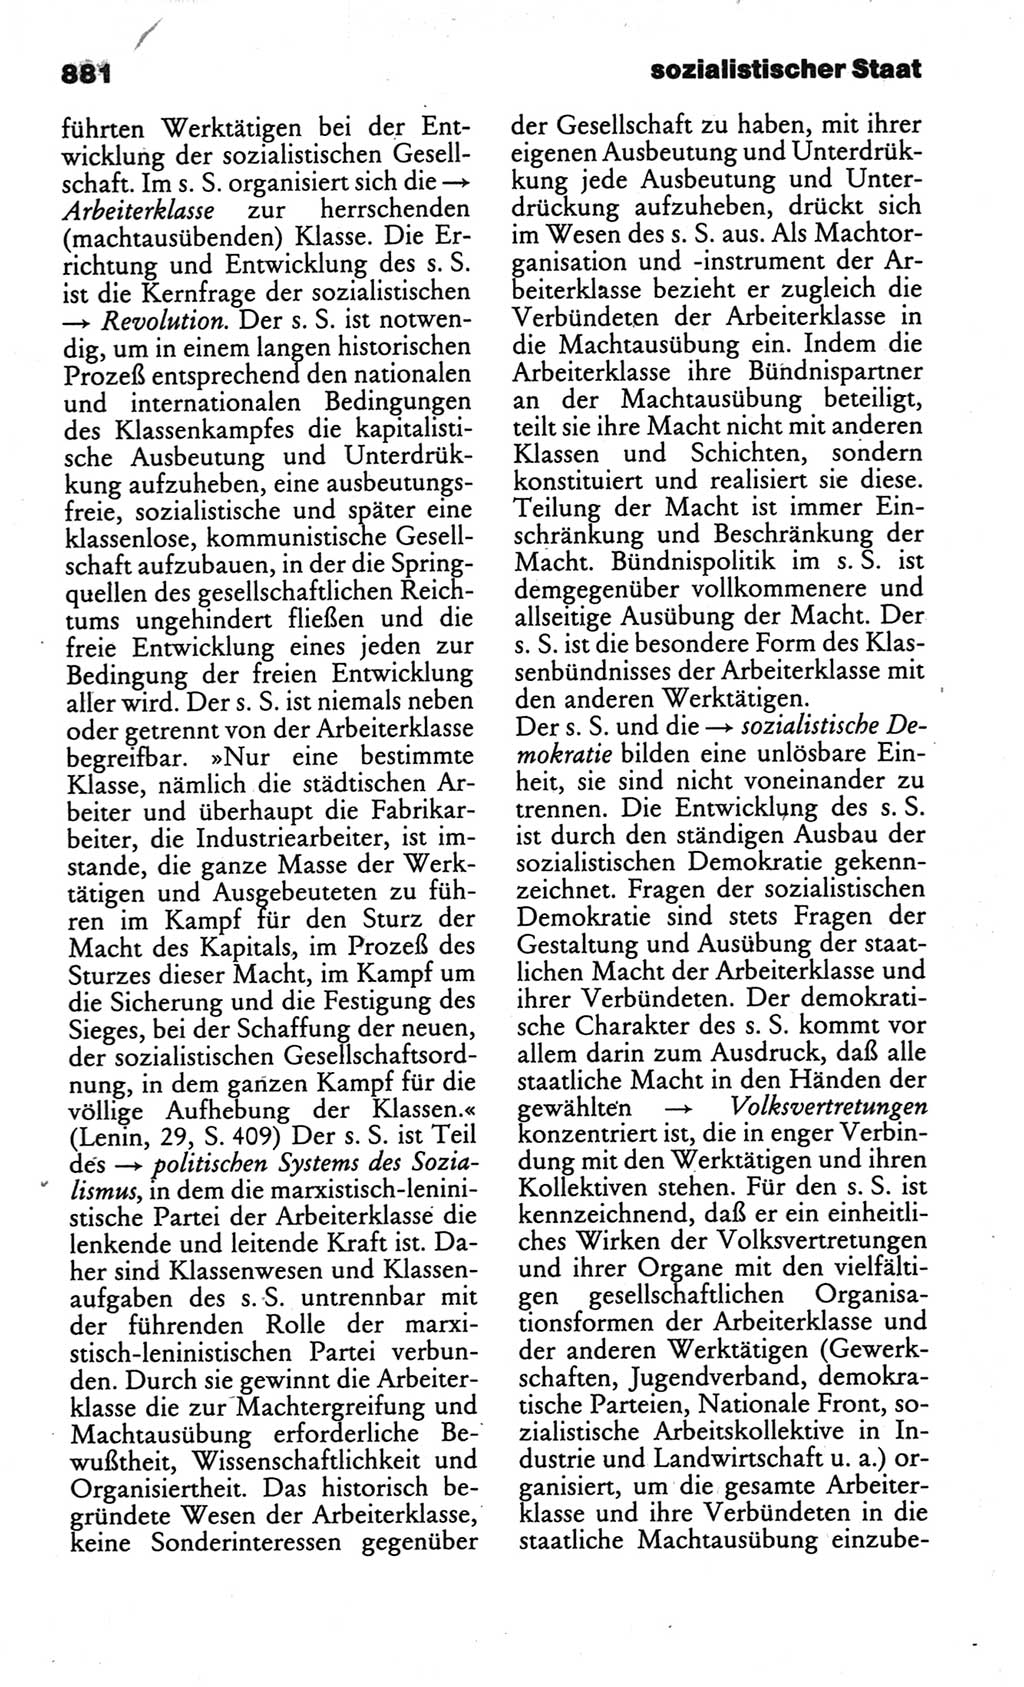 Kleines politisches Wörterbuch [Deutsche Demokratische Republik (DDR)] 1986, Seite 881 (Kl. pol. Wb. DDR 1986, S. 881)